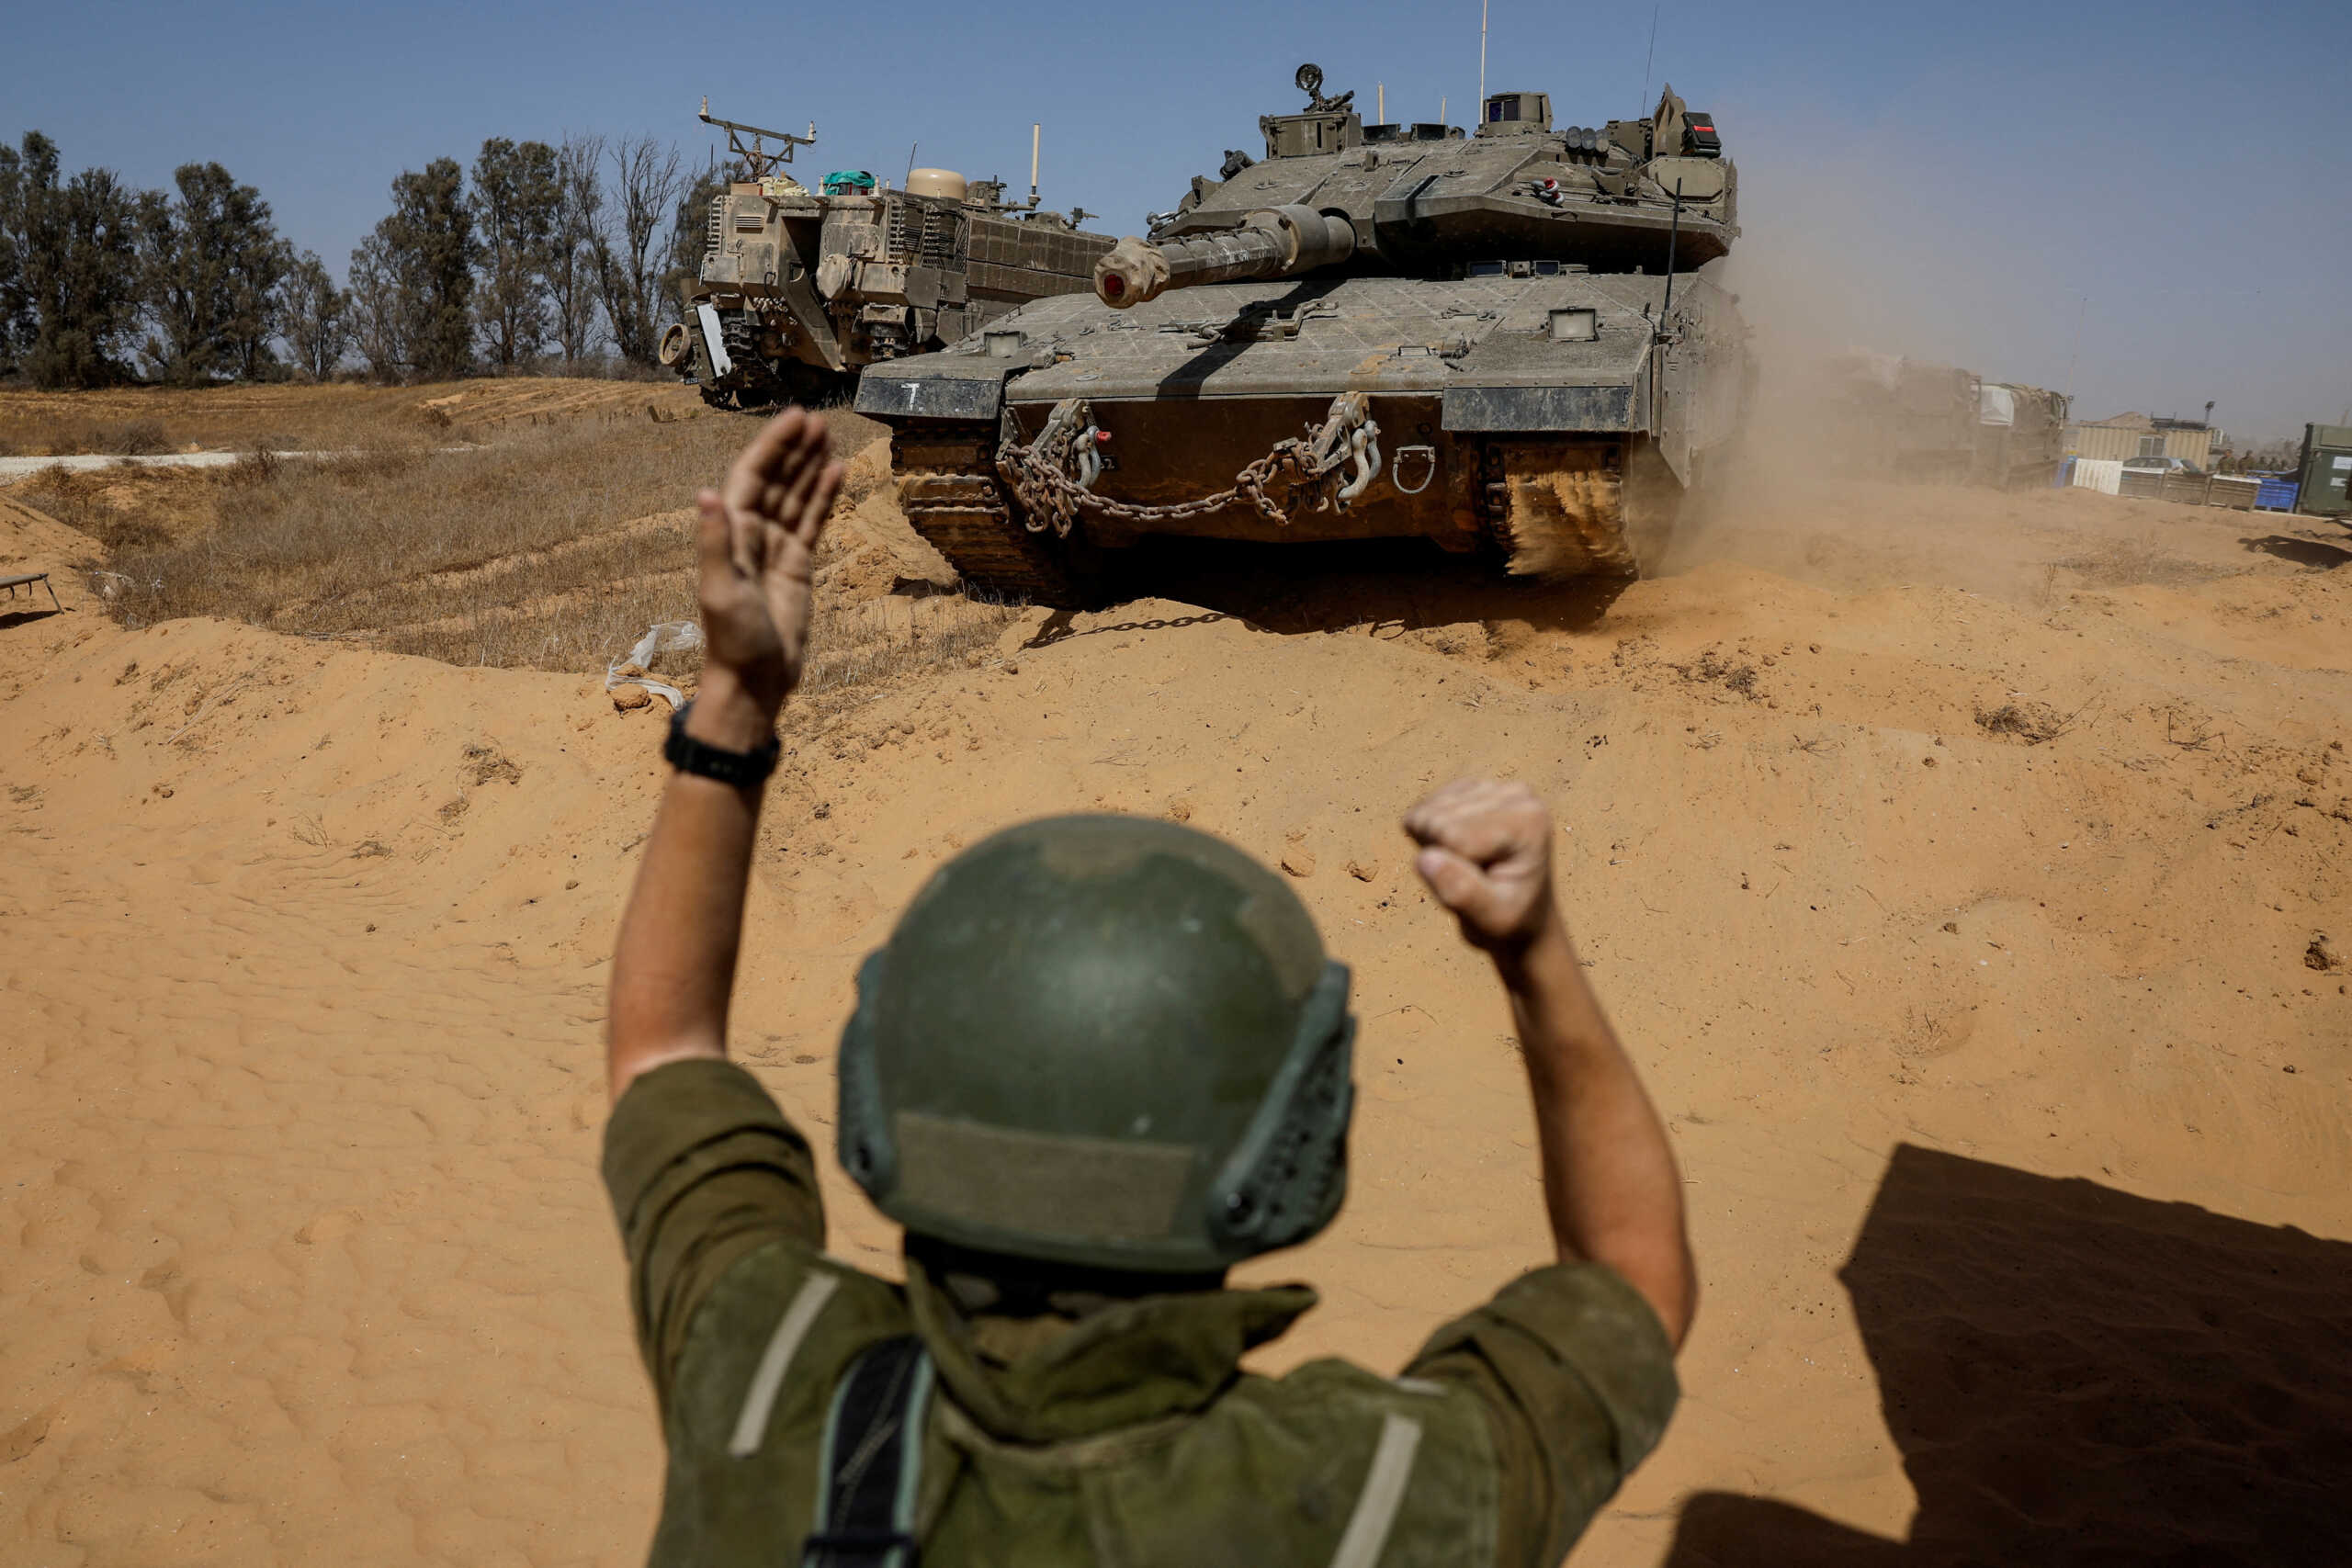 Ράφα: Ανταλλαγή πυρών ανάμεσα σε Ισραηλινούς και Αιγύπτιους στρατιώτες στα σύνορα – Πληροφορίες για θύματα